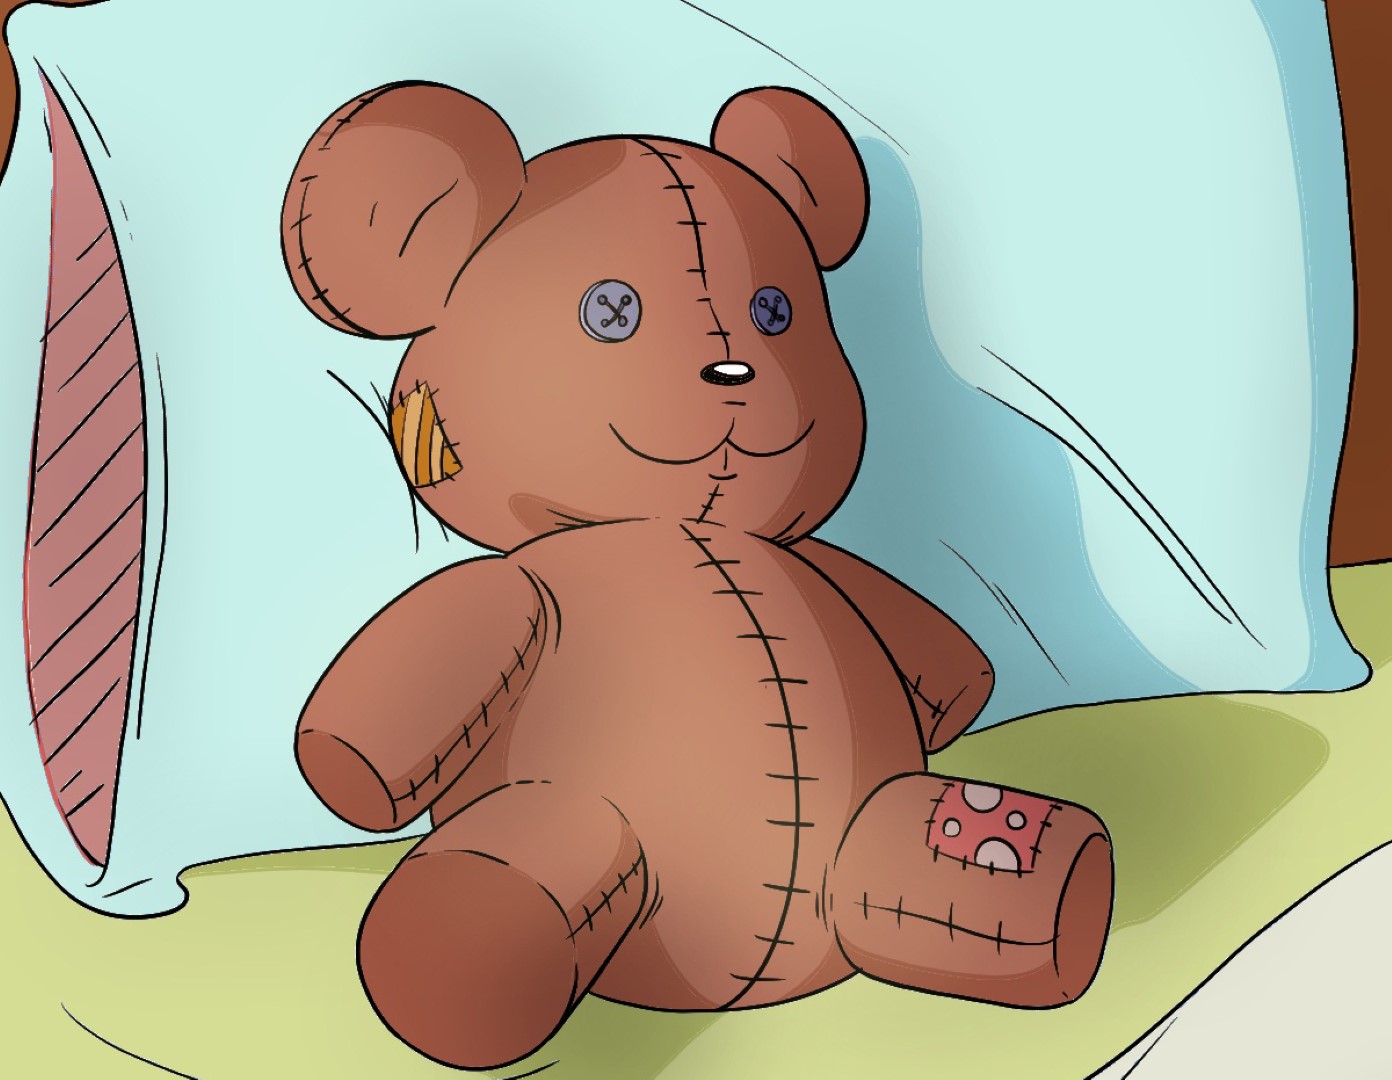 Drew born. Teddy Bear draw. Teddy Bear drawing. Teddy draw. Детский рисунок плюшевый мишка светло-коричневого цвета.